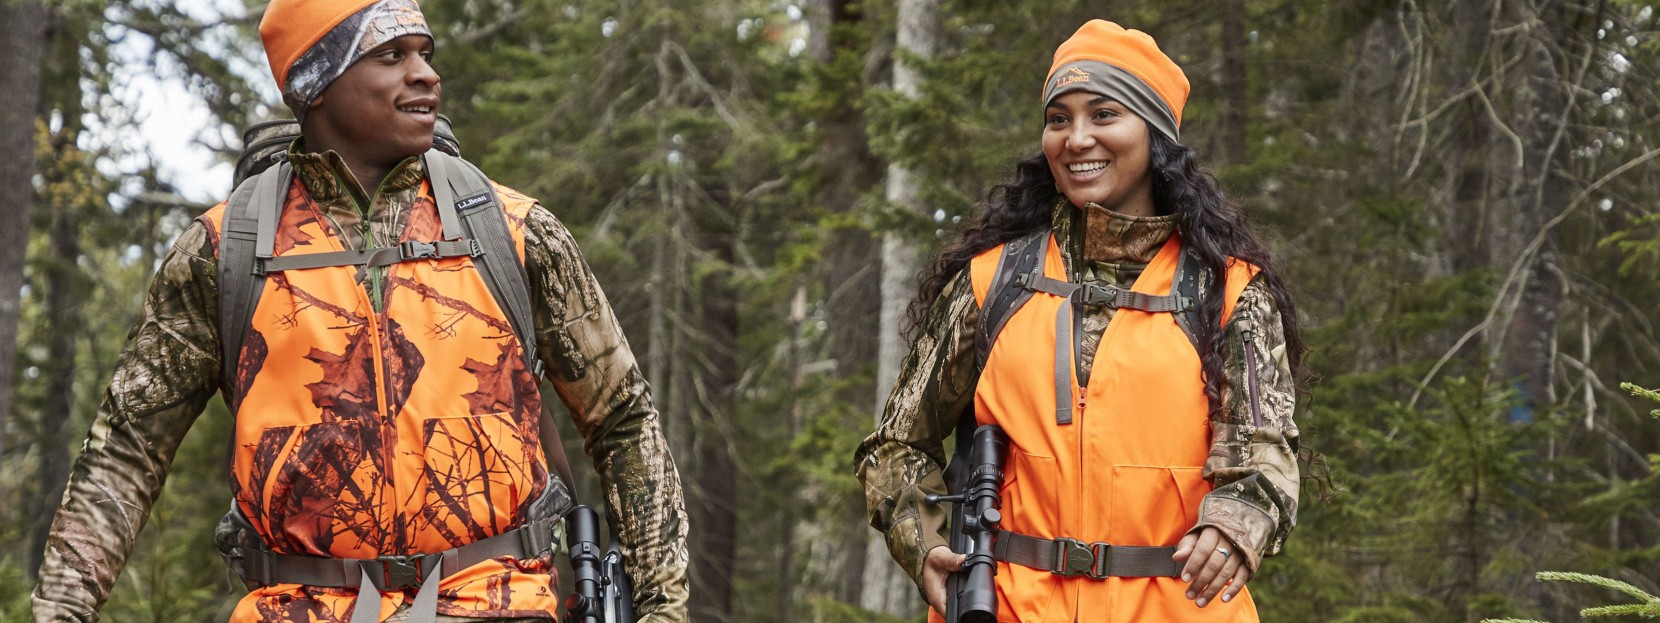 Man and woman wearing hi-vis orange hunting vests walking in the woods.